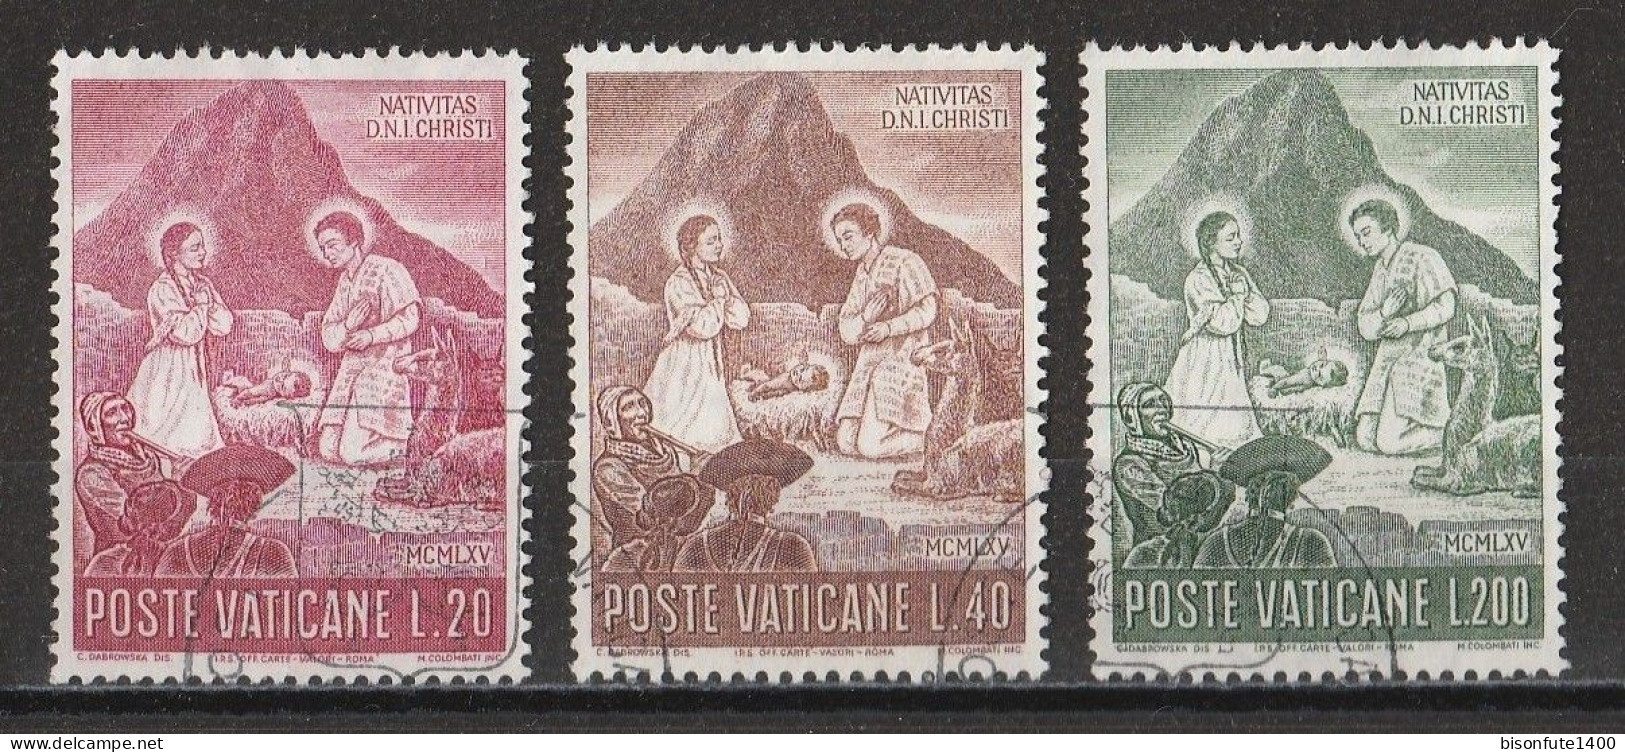 Vatican 1965 : Timbres Yvert & Tellier N° 432 - 433 - 434 - 435 - 436 - 437 - 438 - 439 Et 440 Oblitérés. - Gebruikt